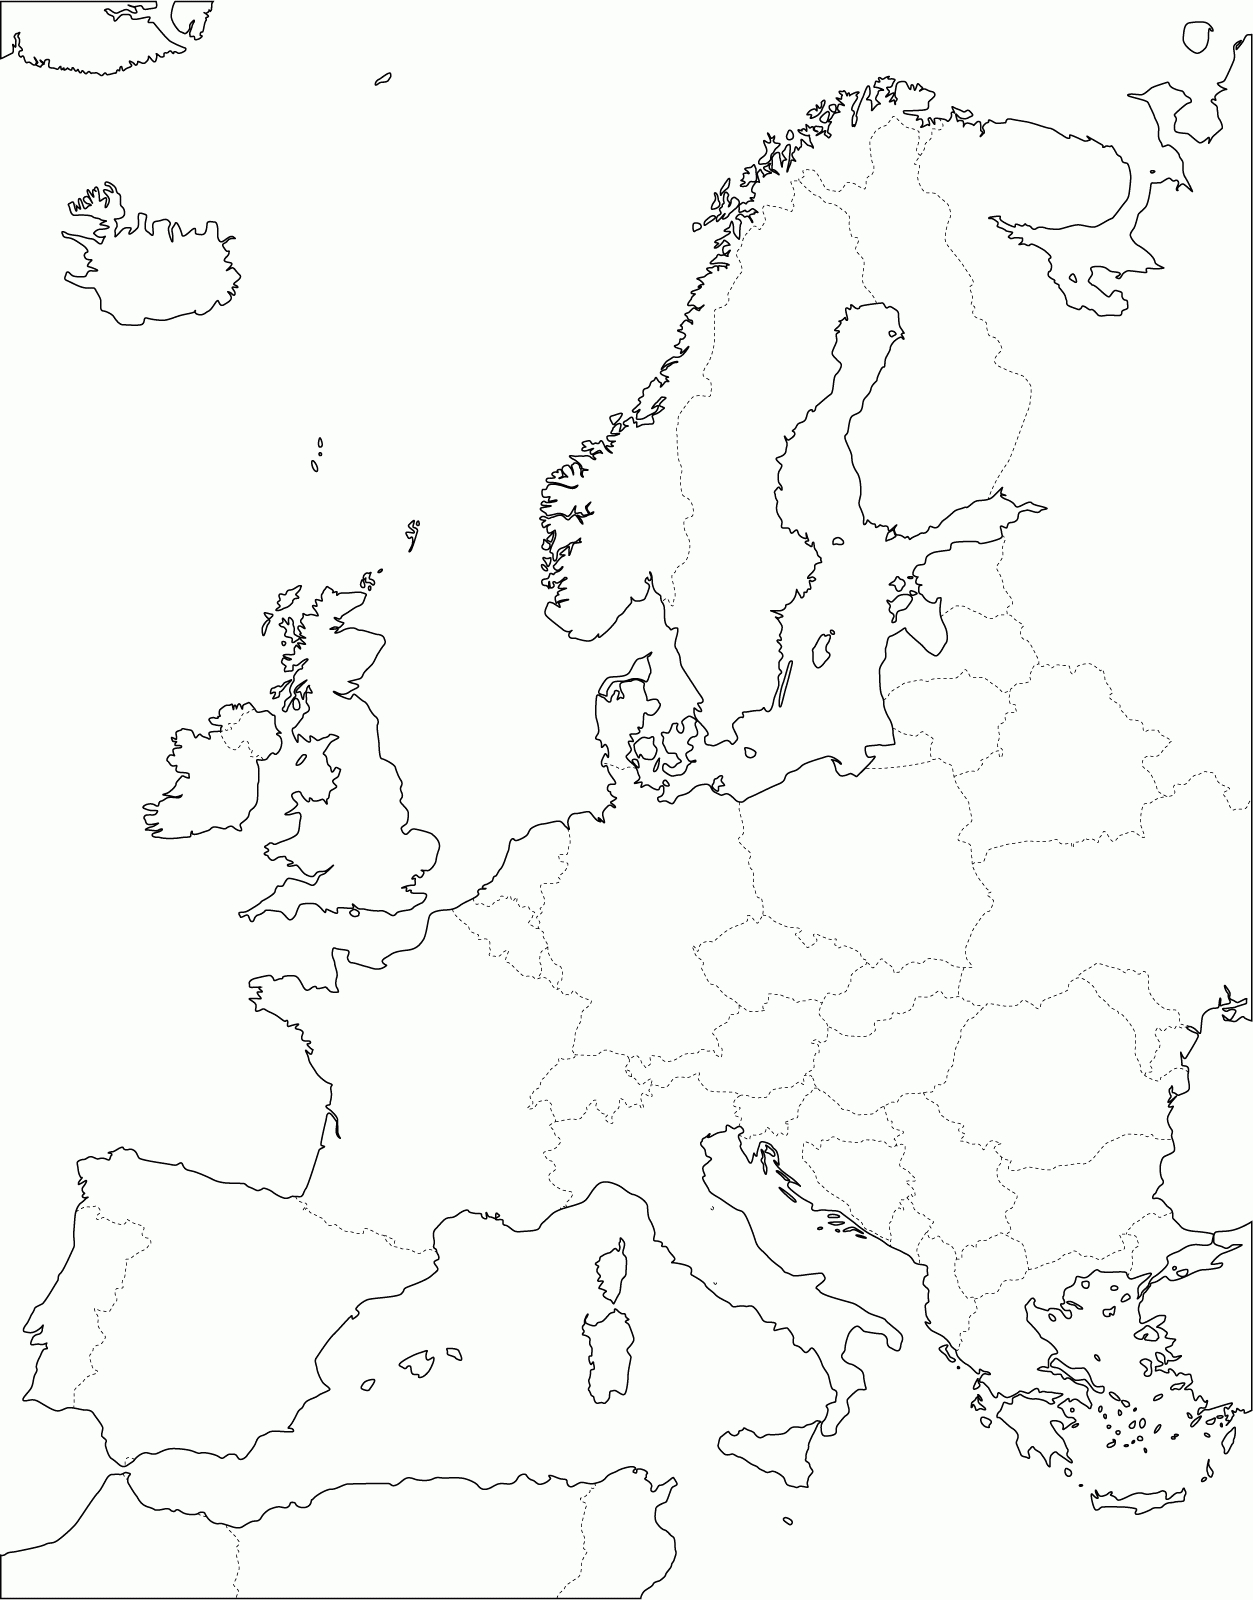 Grande Carte D'europe Vierge Et Blanche À Compléter | Carte pour Carte De L Europe Vierge